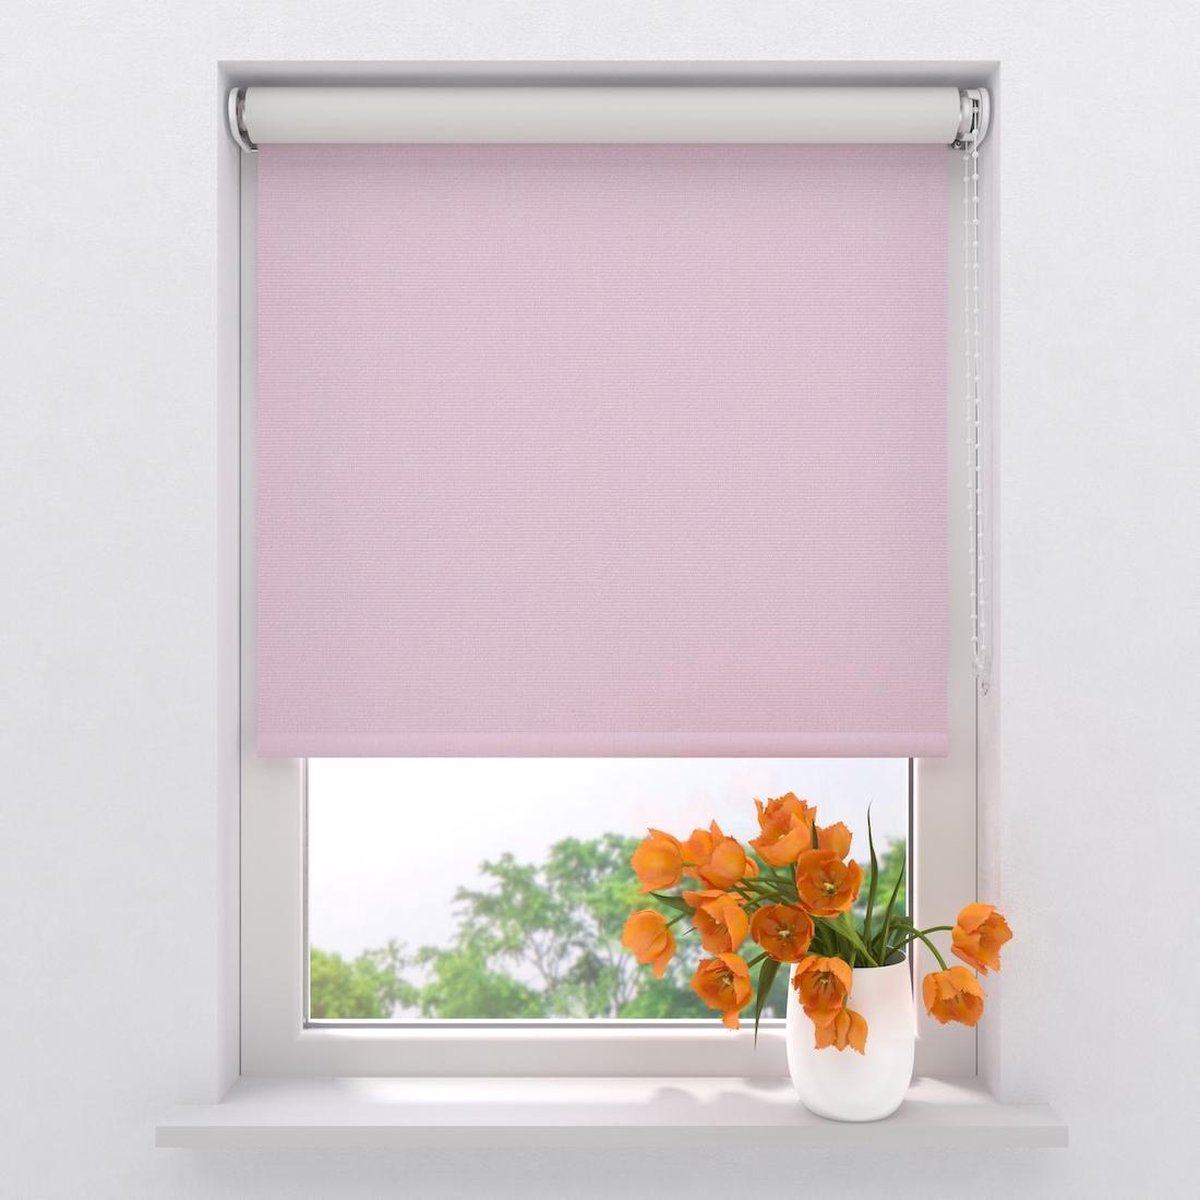 Rolgordijn Easy Verduisterend - Pink - 100 x 190 cm